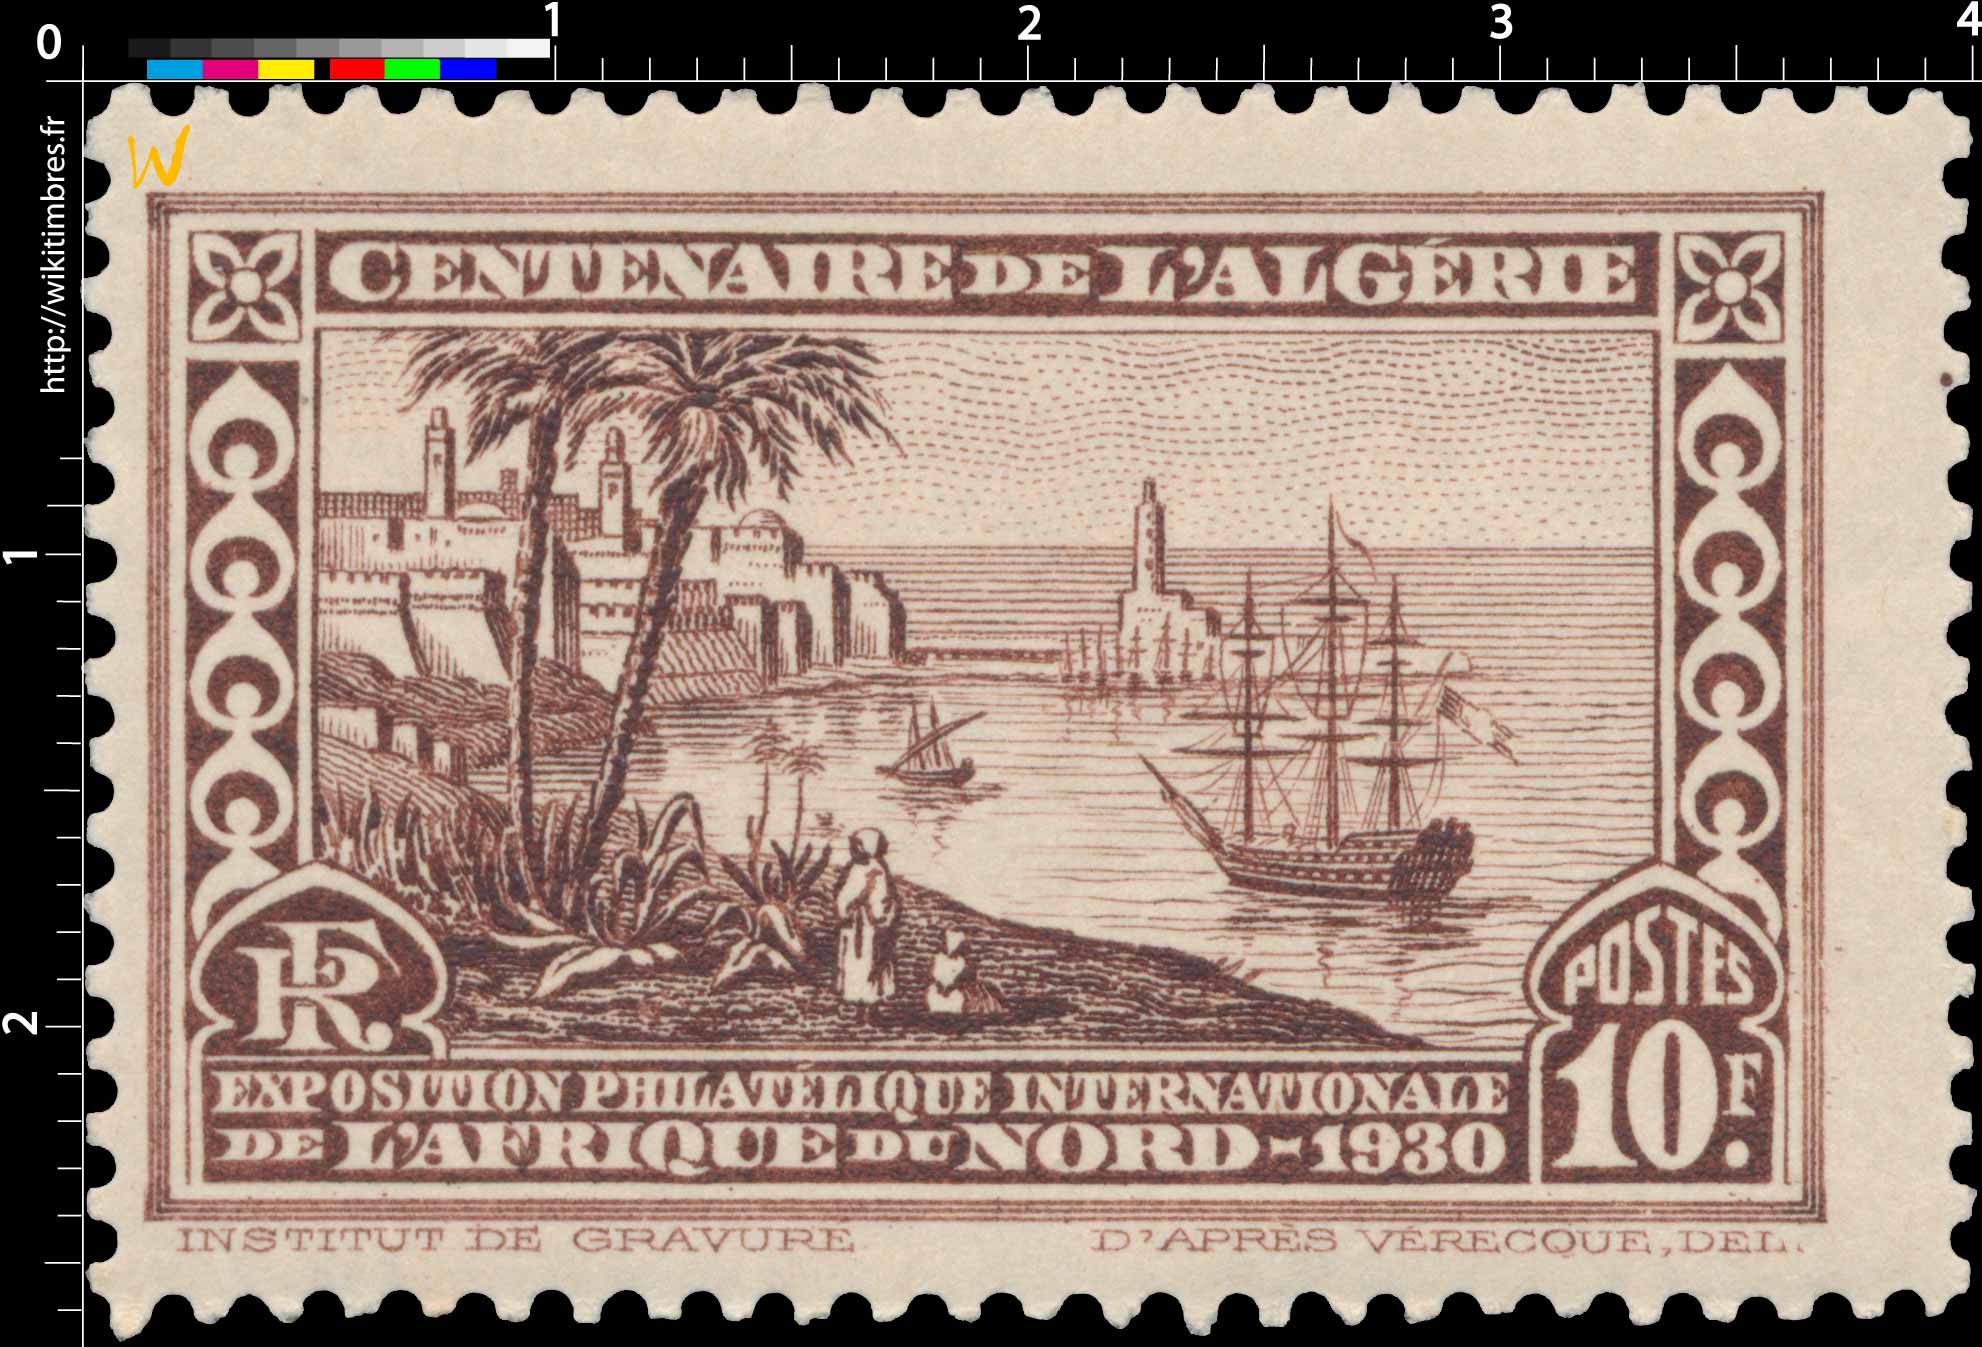 Algérie - Centenaire de l'Algérie exposition philatélique internationale de l'Afrique du nord 1930